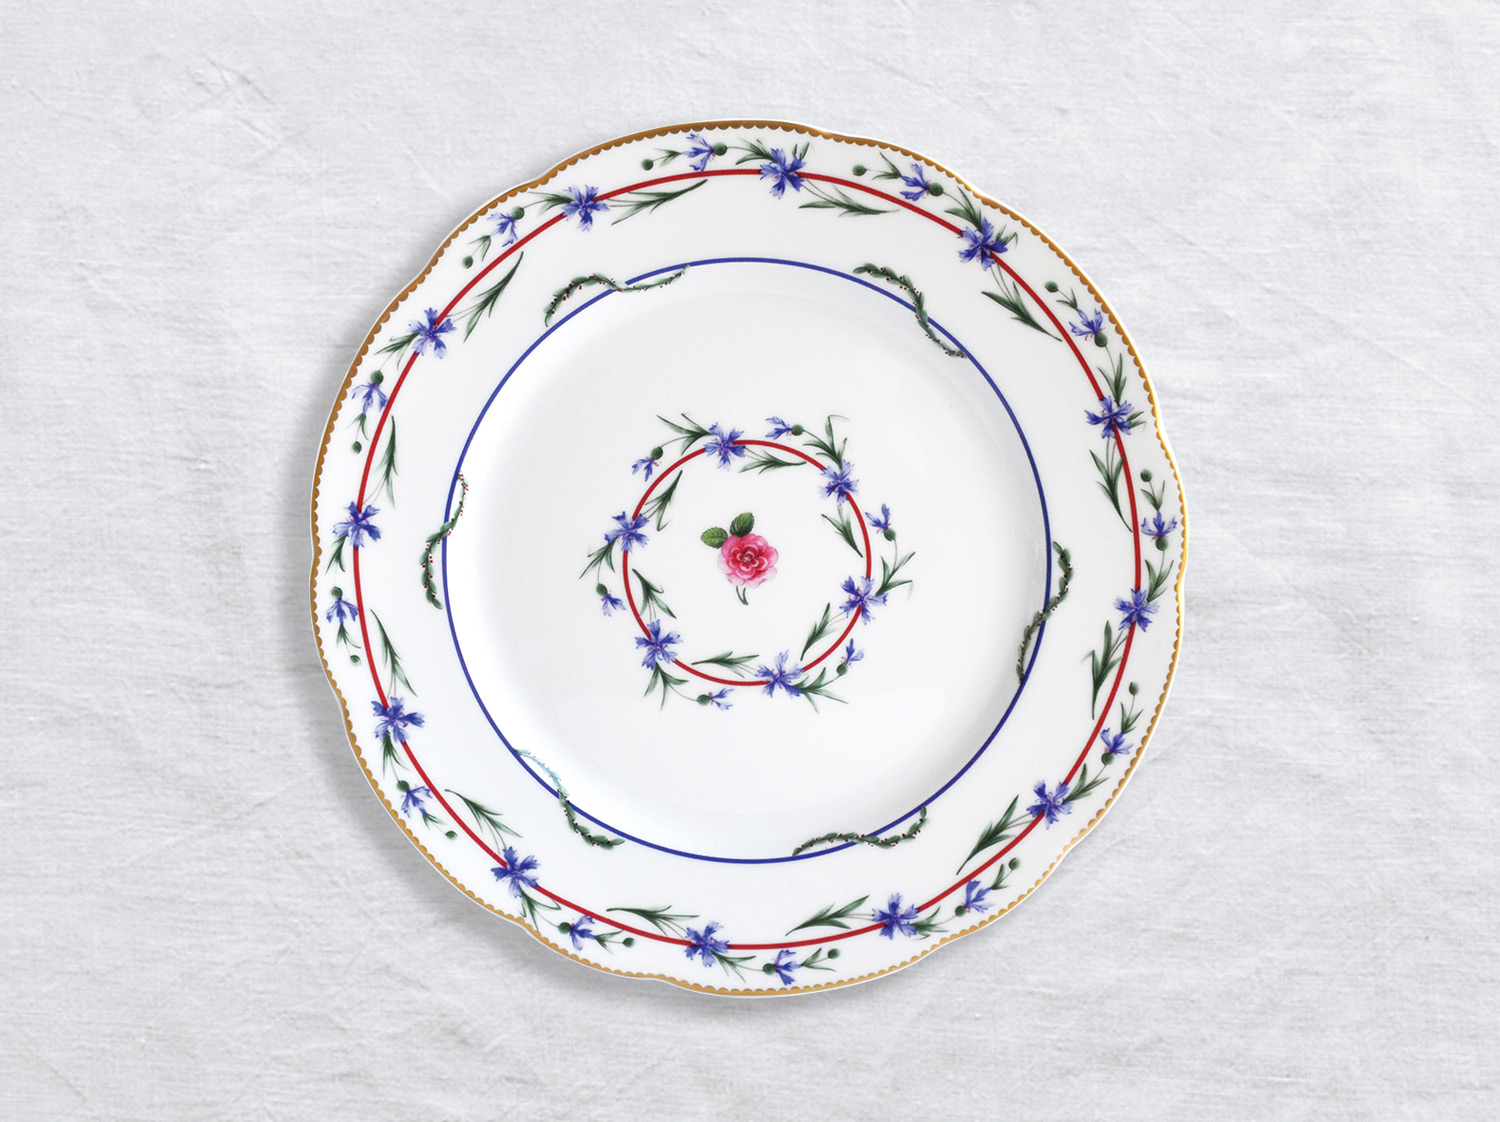 Assiette à diner 26 cm en porcelaine de la collection Gobelet du roy Bernardaud